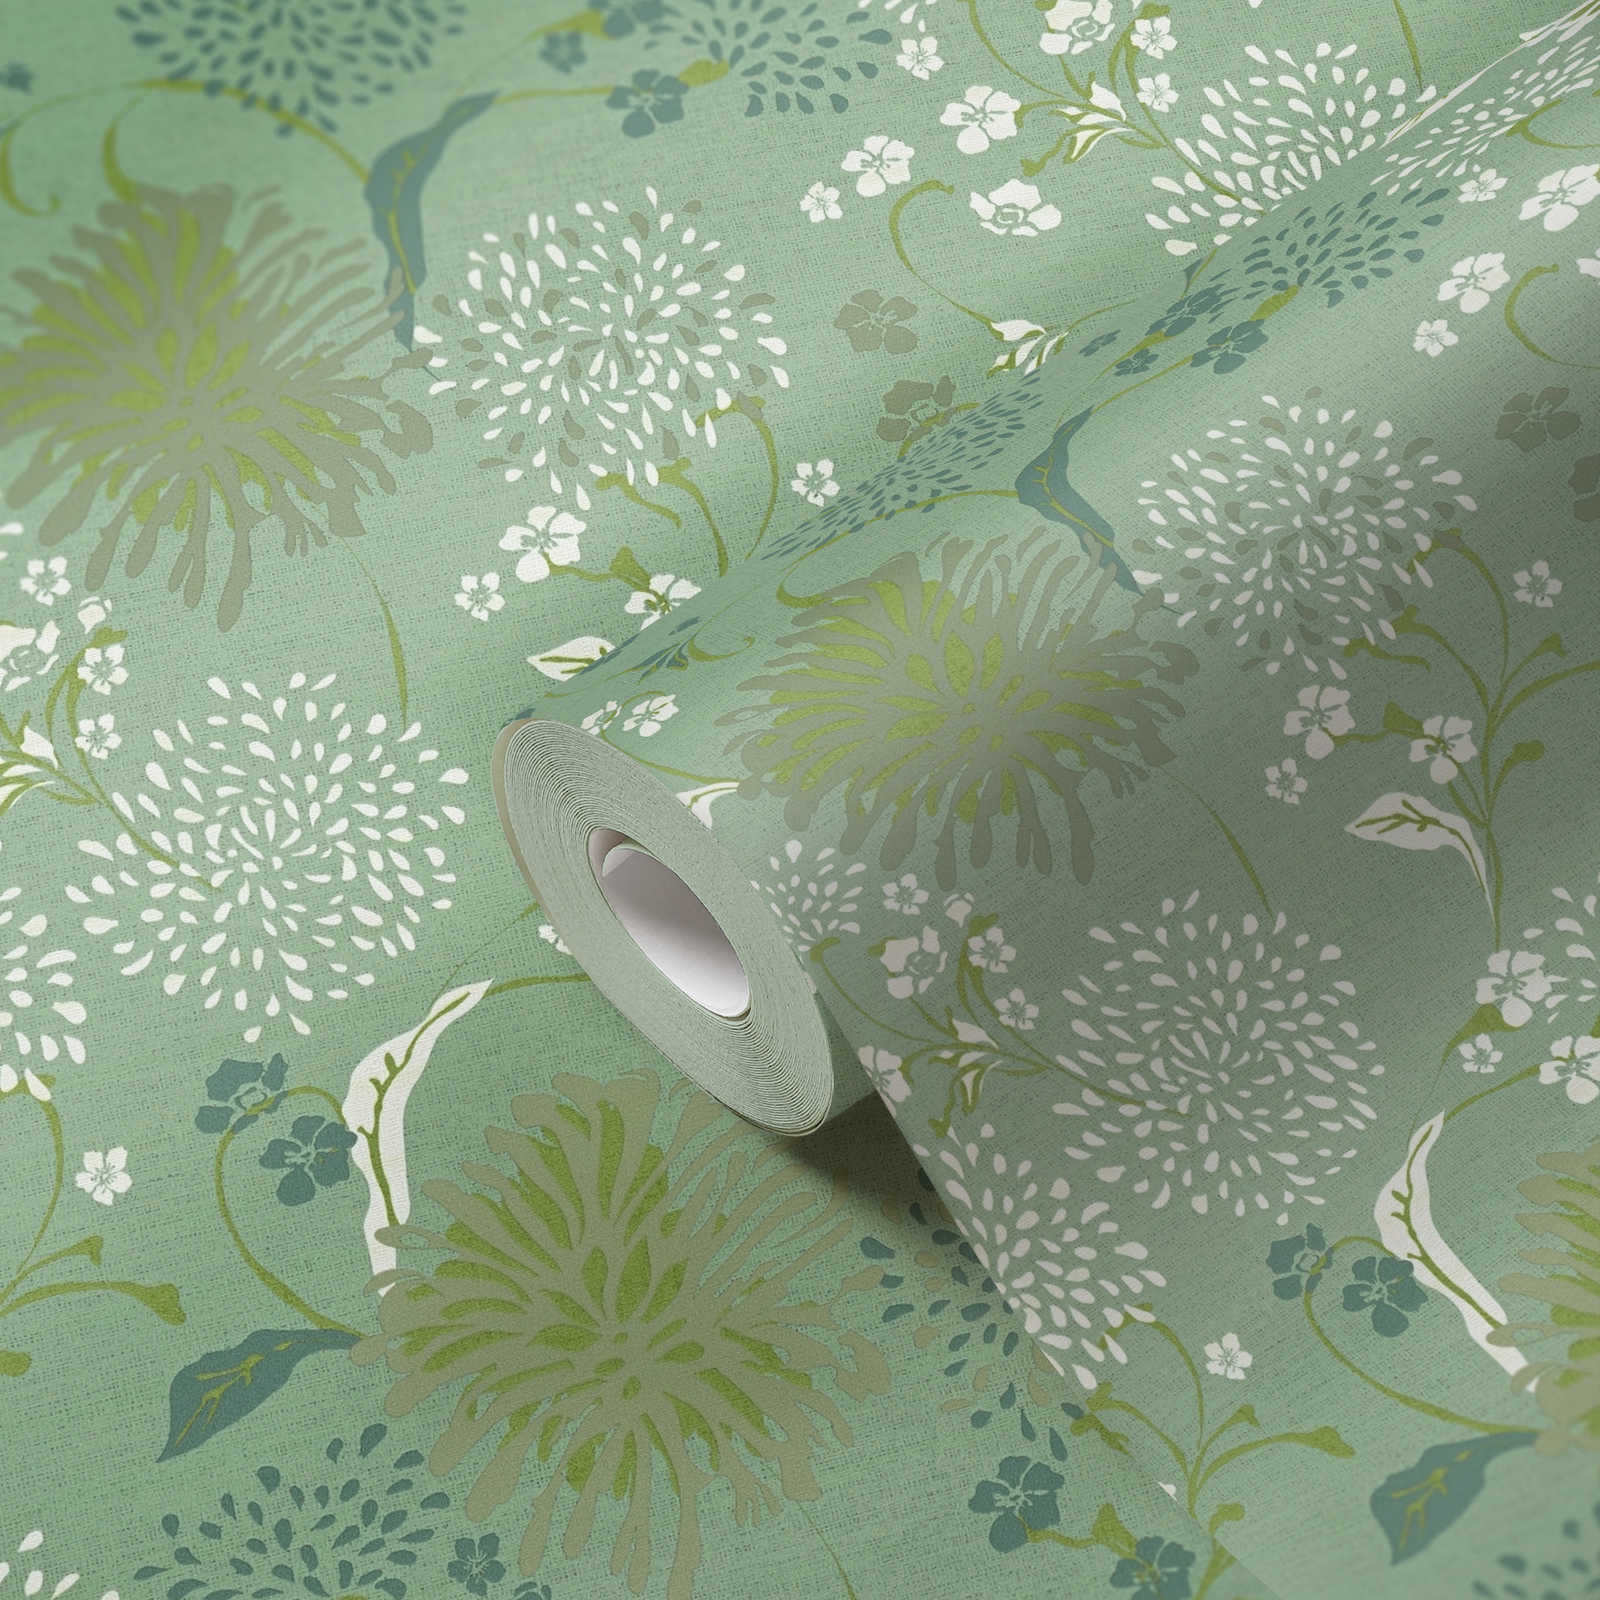             Vliestapete mit floralem Pusteblumen-Muster – Grün, Weiß
        